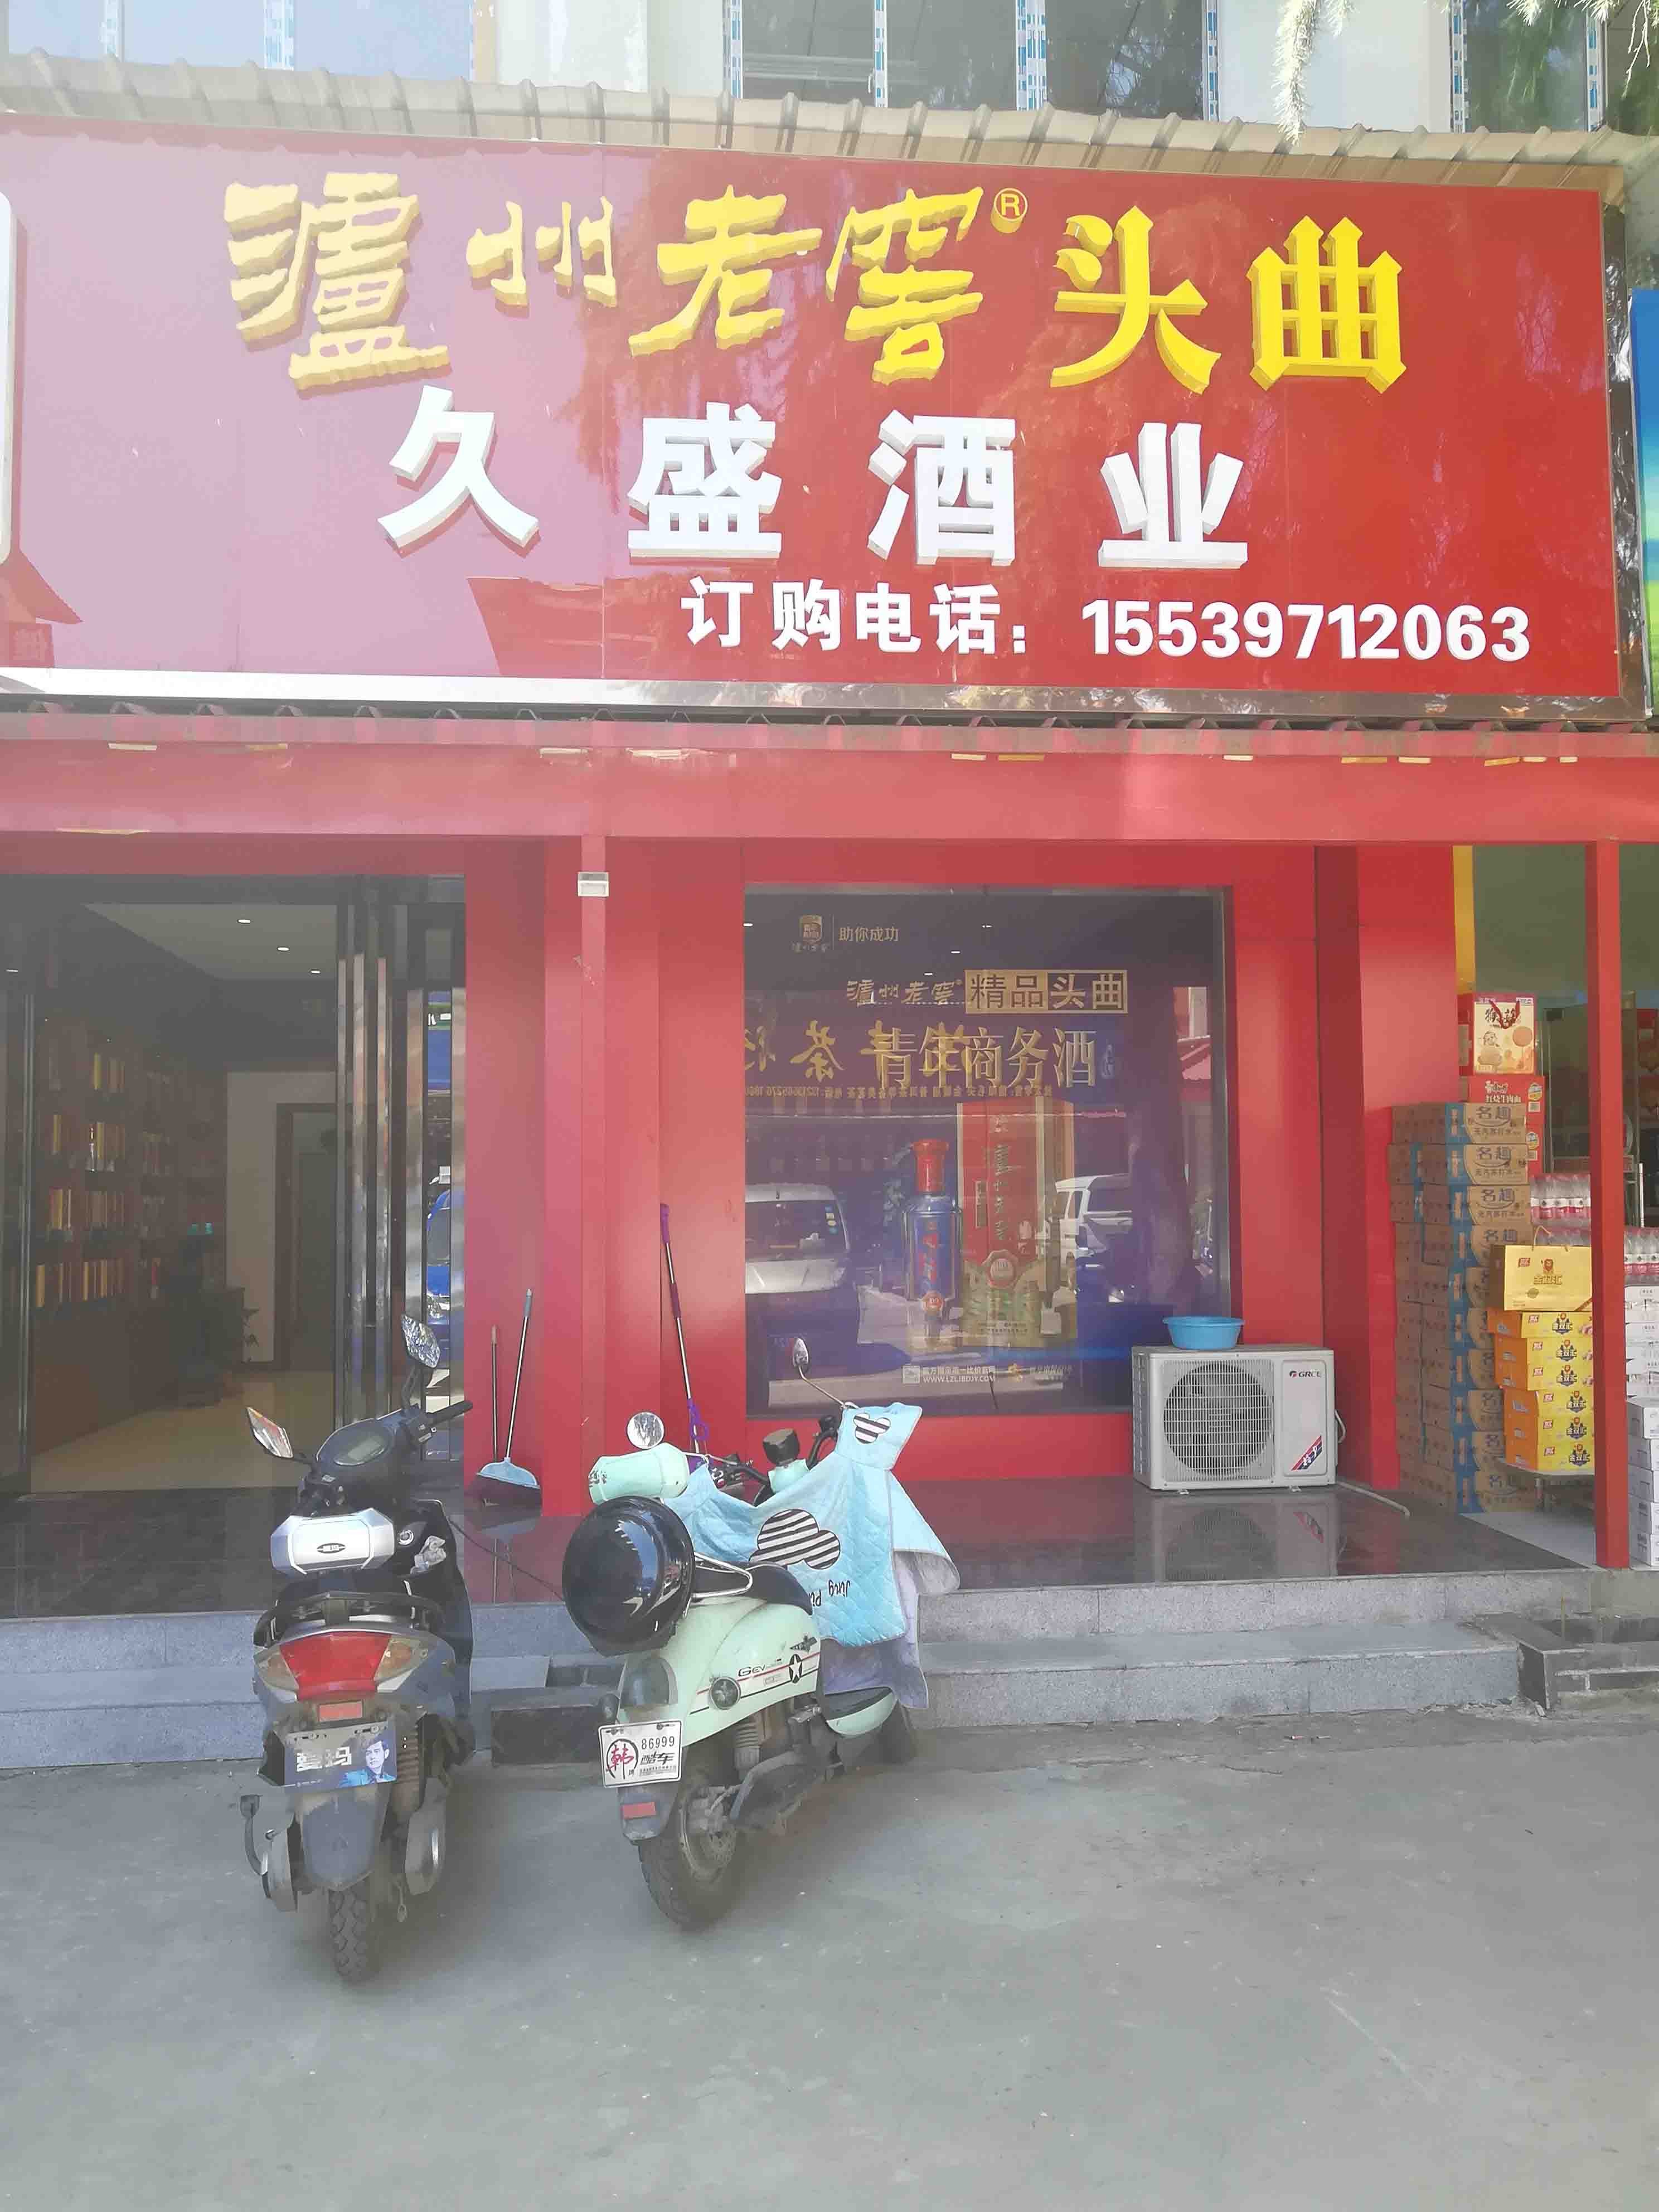 长江东路在洛阳出租高端写字楼，专注于寻求办公环境的企业和企业家设计。我们提供豪华写字楼，保证您的商务需求得到满足